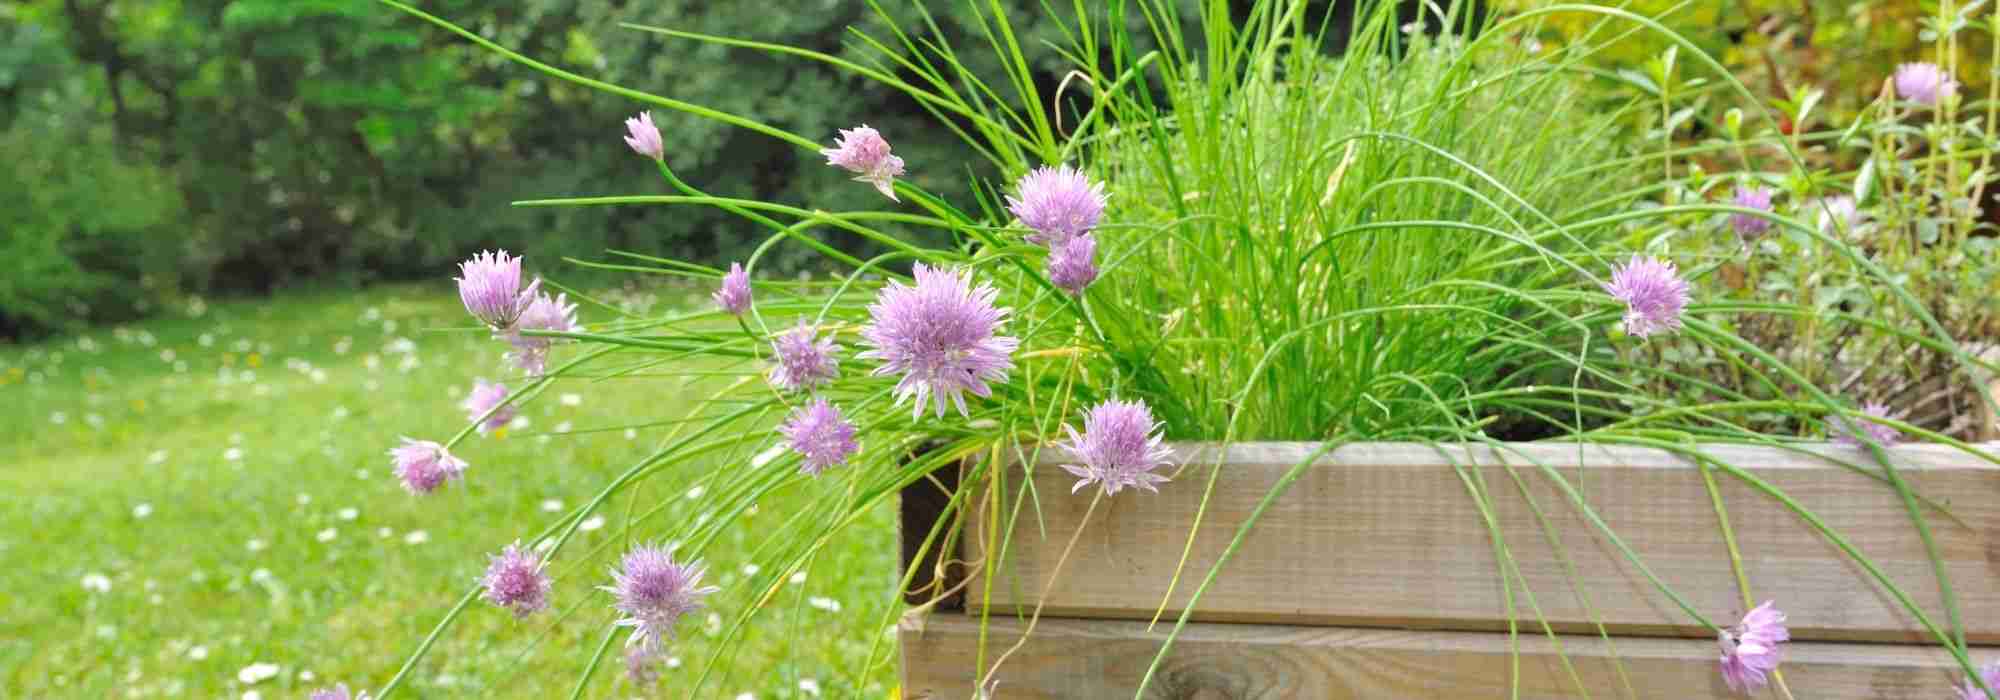 Jardinière auto-irrigante Cobble Trio pour les herbes aromatiques